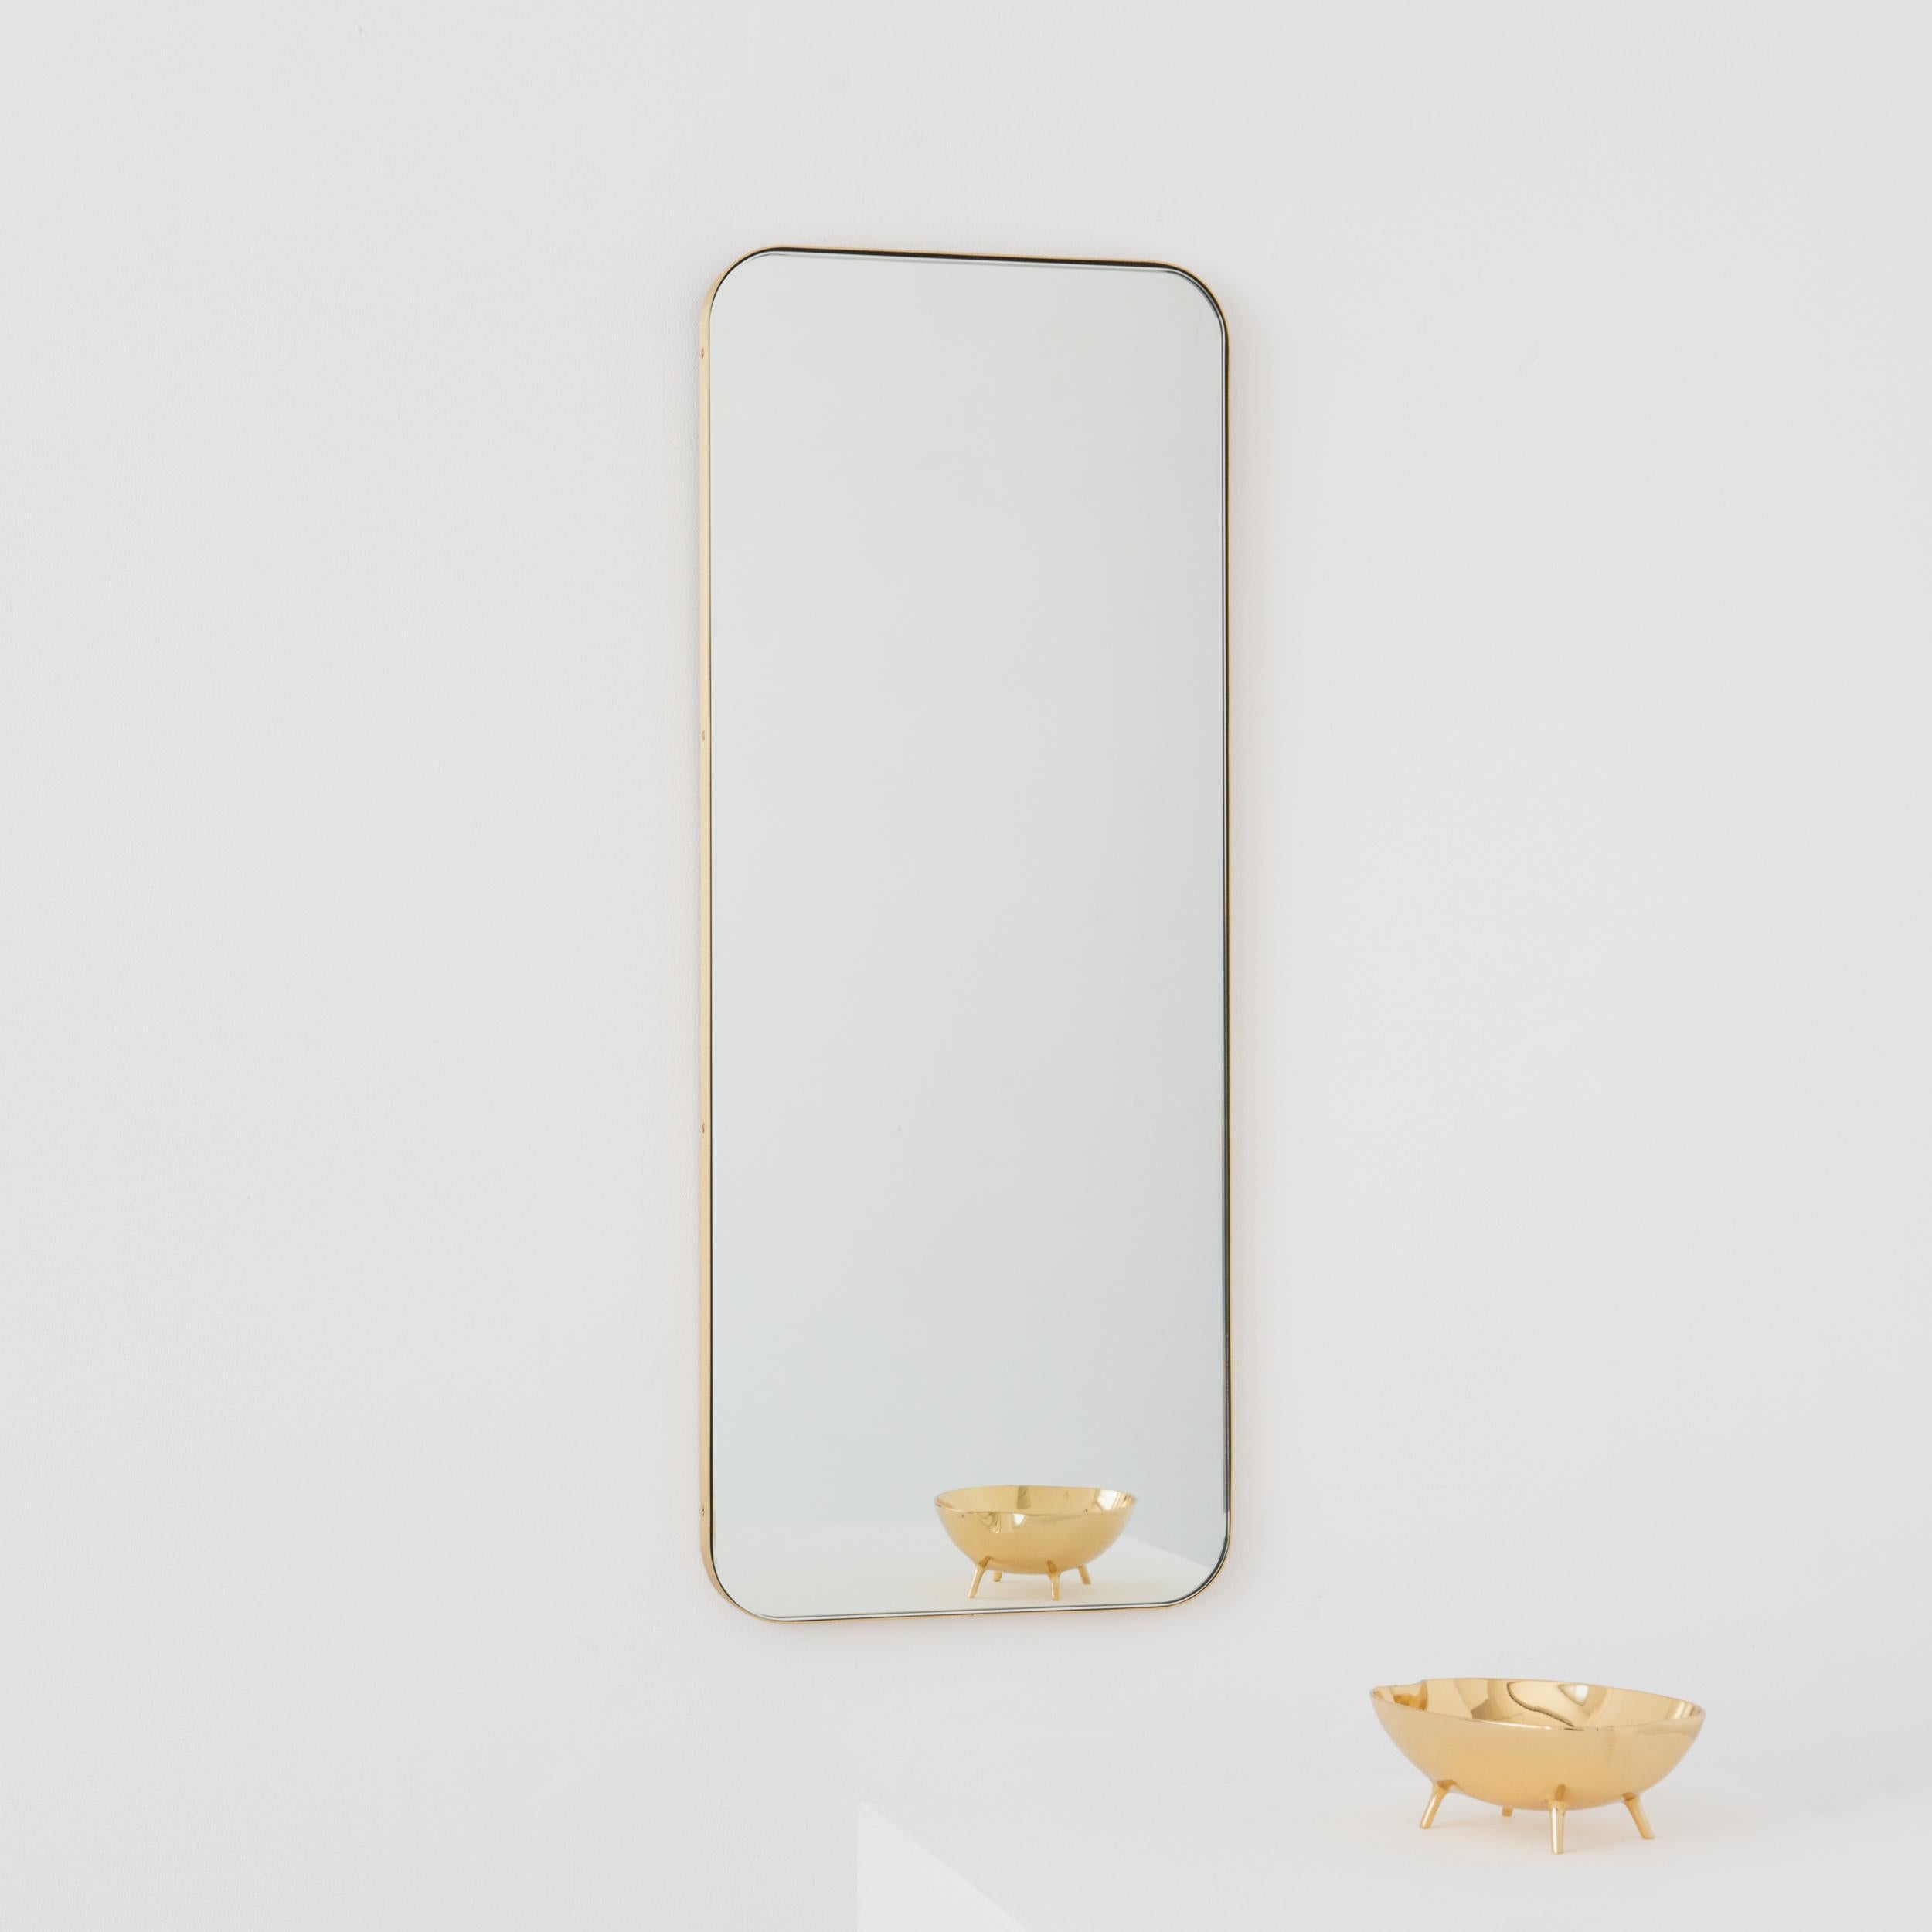 Miroir rectangulaire moderne avec un élégant cadre en laiton massif brossé. Une partie de la charmante collection Quadris™, conçue et fabriquée à la main à Londres, au Royaume-Uni. 

Les miroirs de taille moyenne, grande et extra-large (37cm x 56cm,